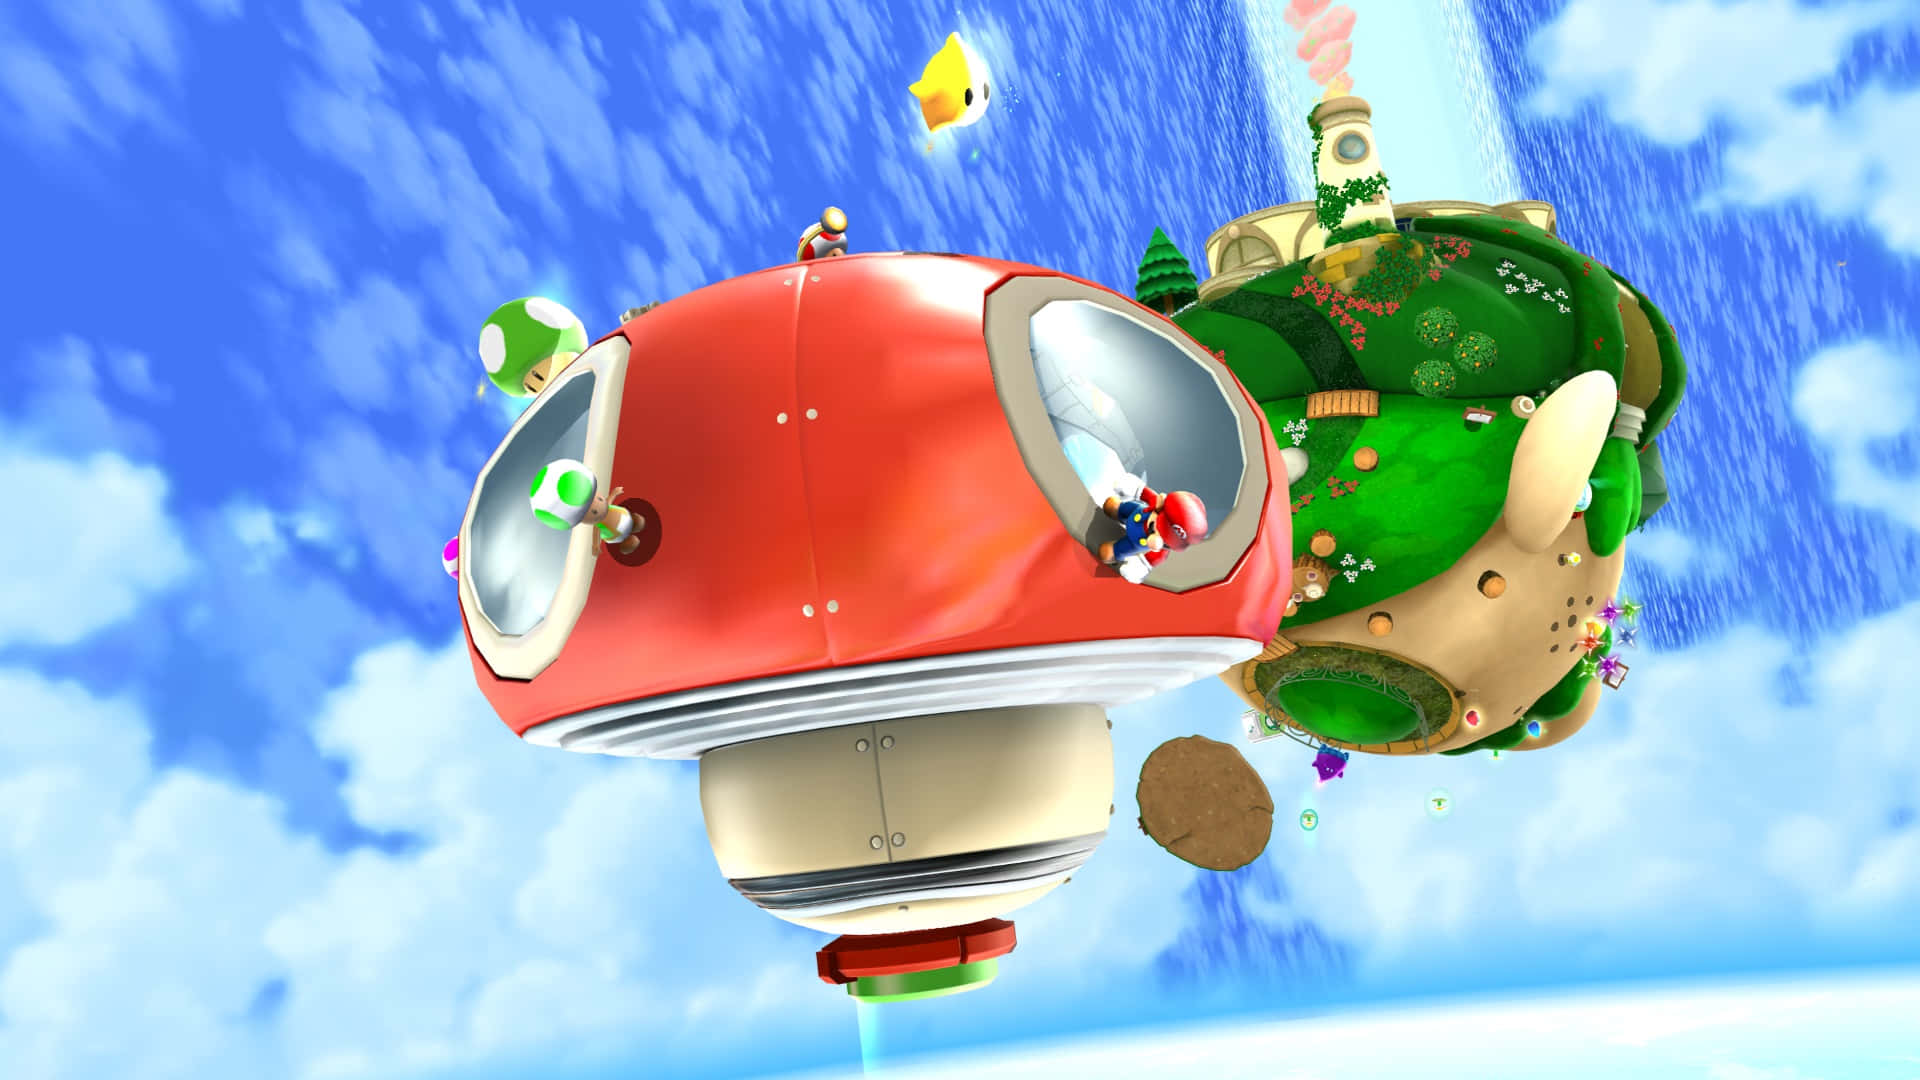 Fondode Pantalla De Super Mario Galaxy 2 En Alta Resolución. Fondo de pantalla